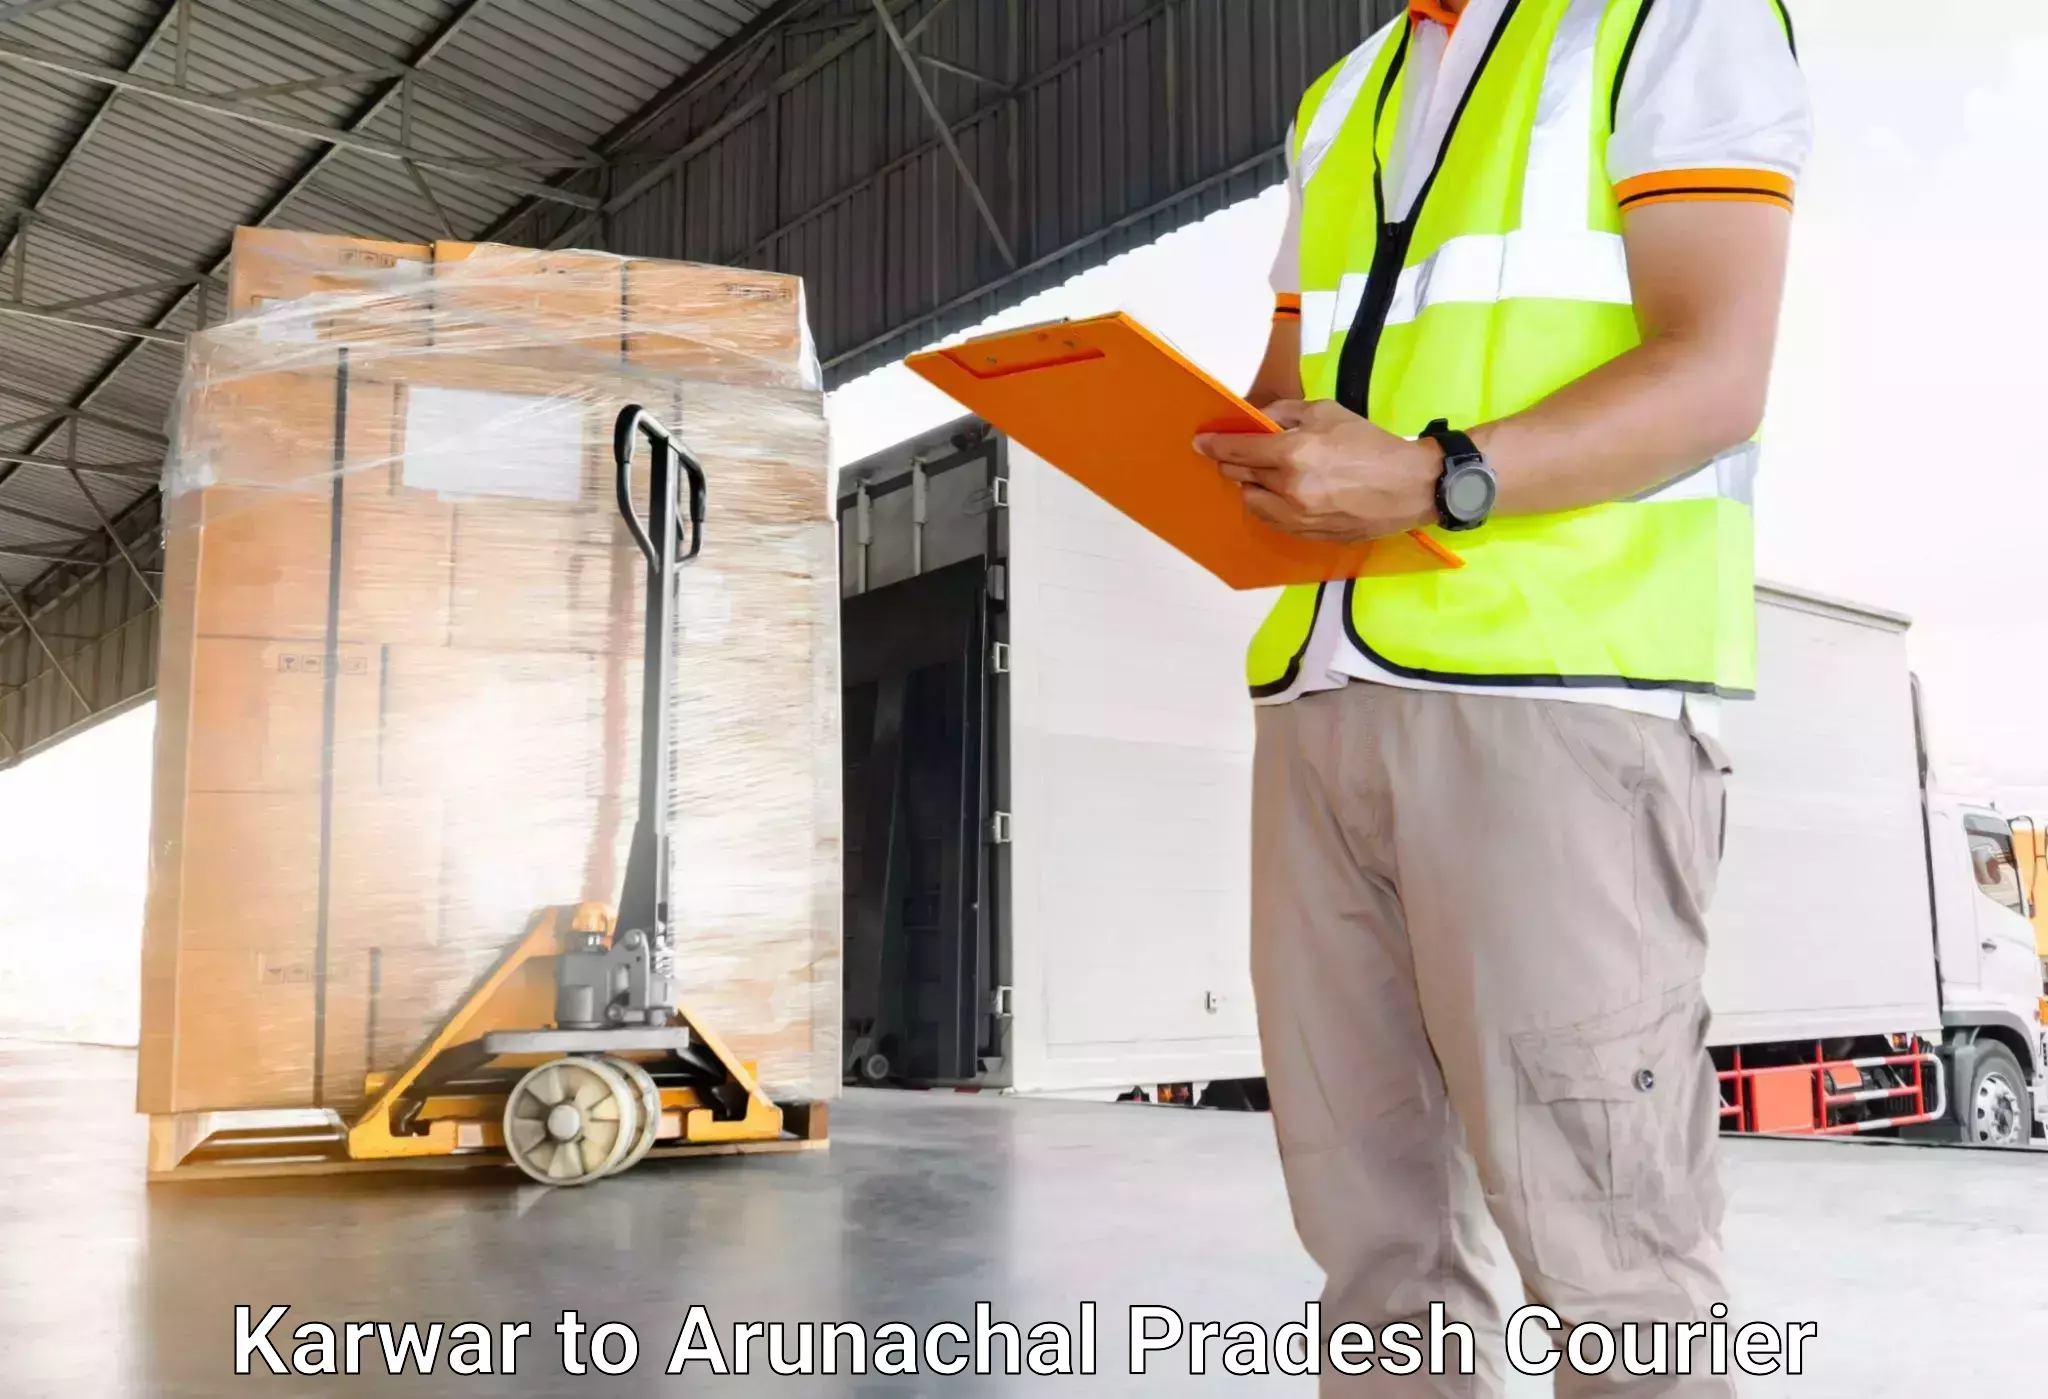 Luggage transport guidelines Karwar to Arunachal Pradesh